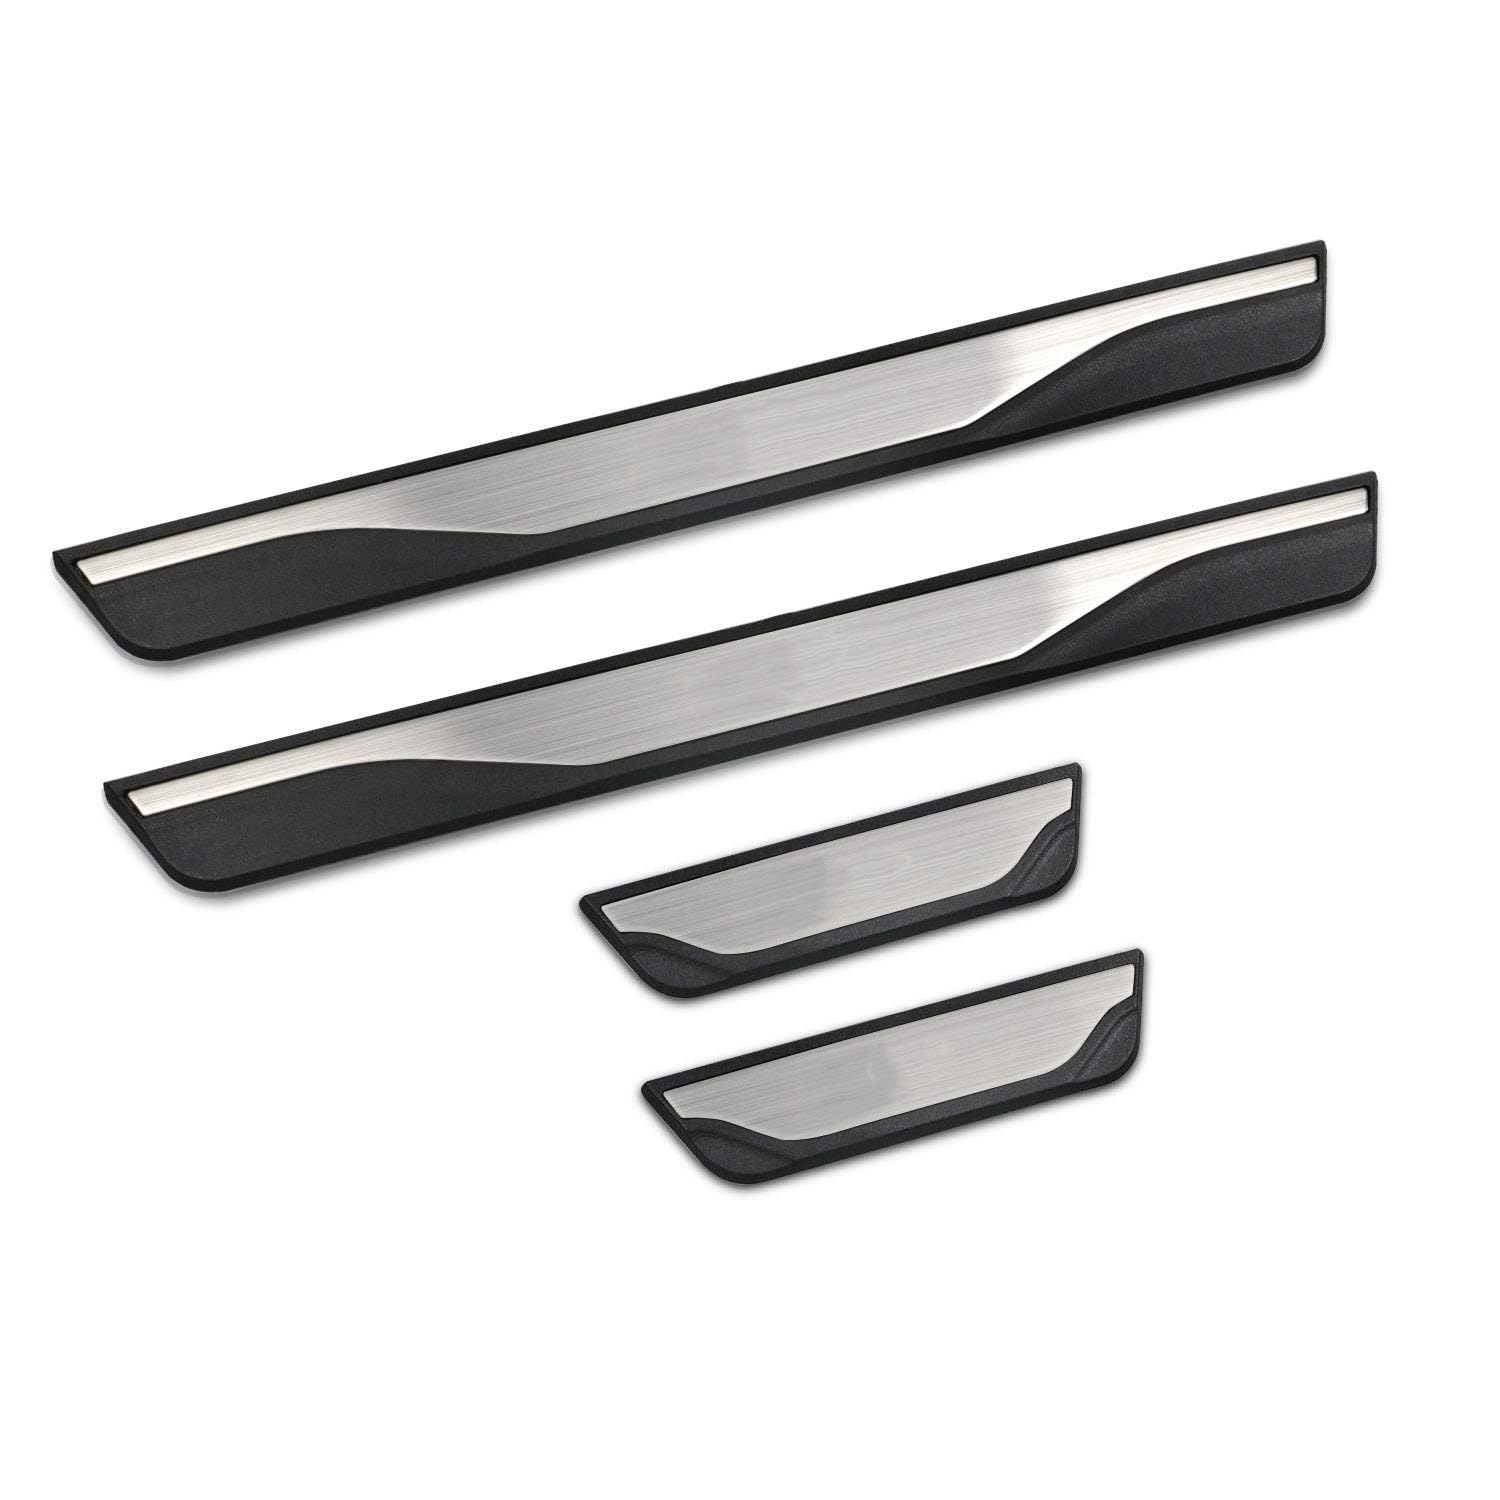 4 Stücke Auto Styling Edelstahl Einstiegsleisten Kick Plates für Vauxhall Crossland X (2017+), Türschwelle Scuff Pedal Anti Scratch Schwellenabdeckung Zubehör von HALOUJQK